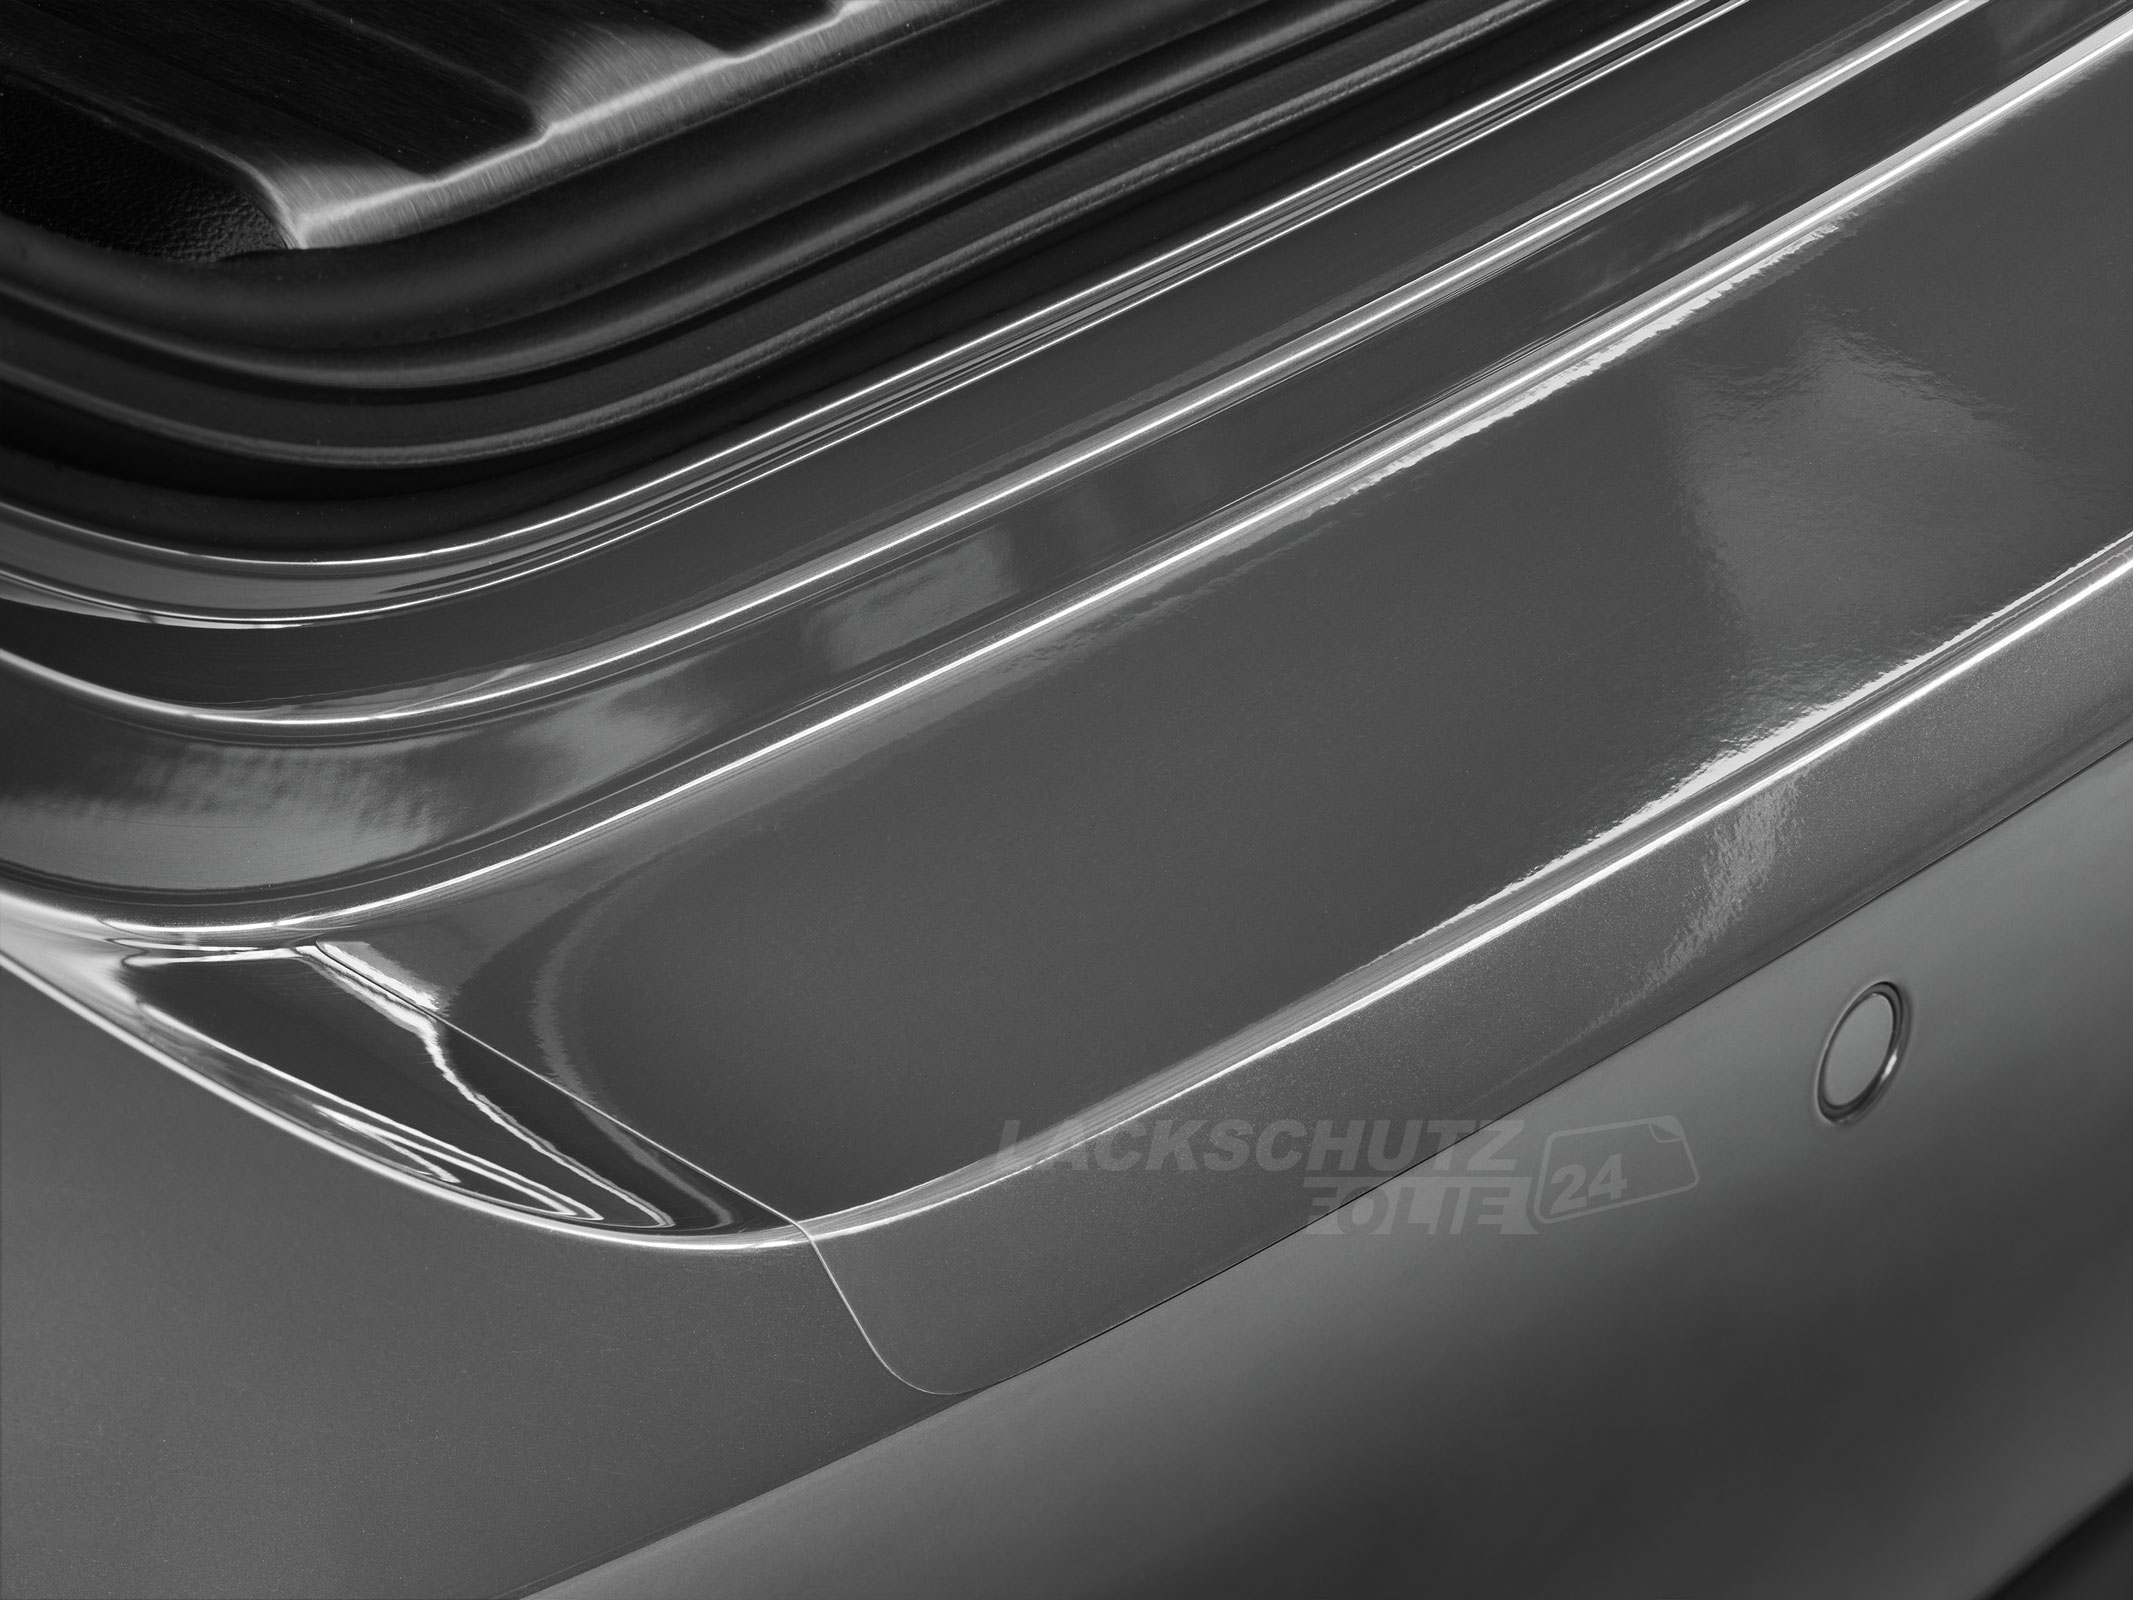 Ladekantenschutzfolie - Transparent Glatt Hochglänzend 150 µm stark für Mazda 6 Sport-Kombi (I) Typ GY, BJ 2002-2008